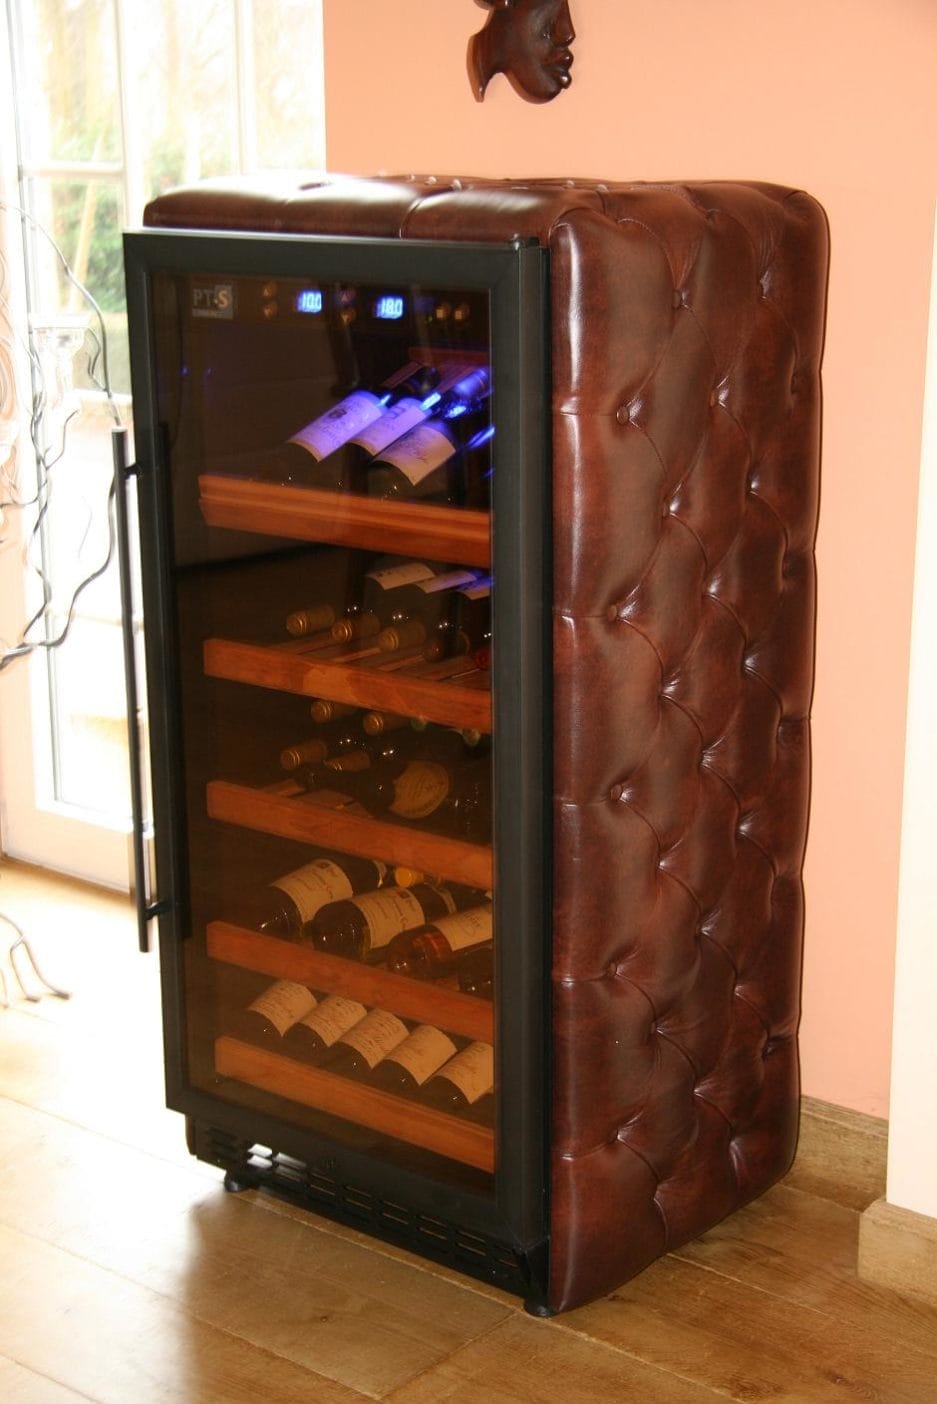 Un cuir enveloppé de cuir marron avec un motif matelassé, avec une porte vitrée ouverte laissant apparaître plusieurs étagères remplies de bouteilles de vin.